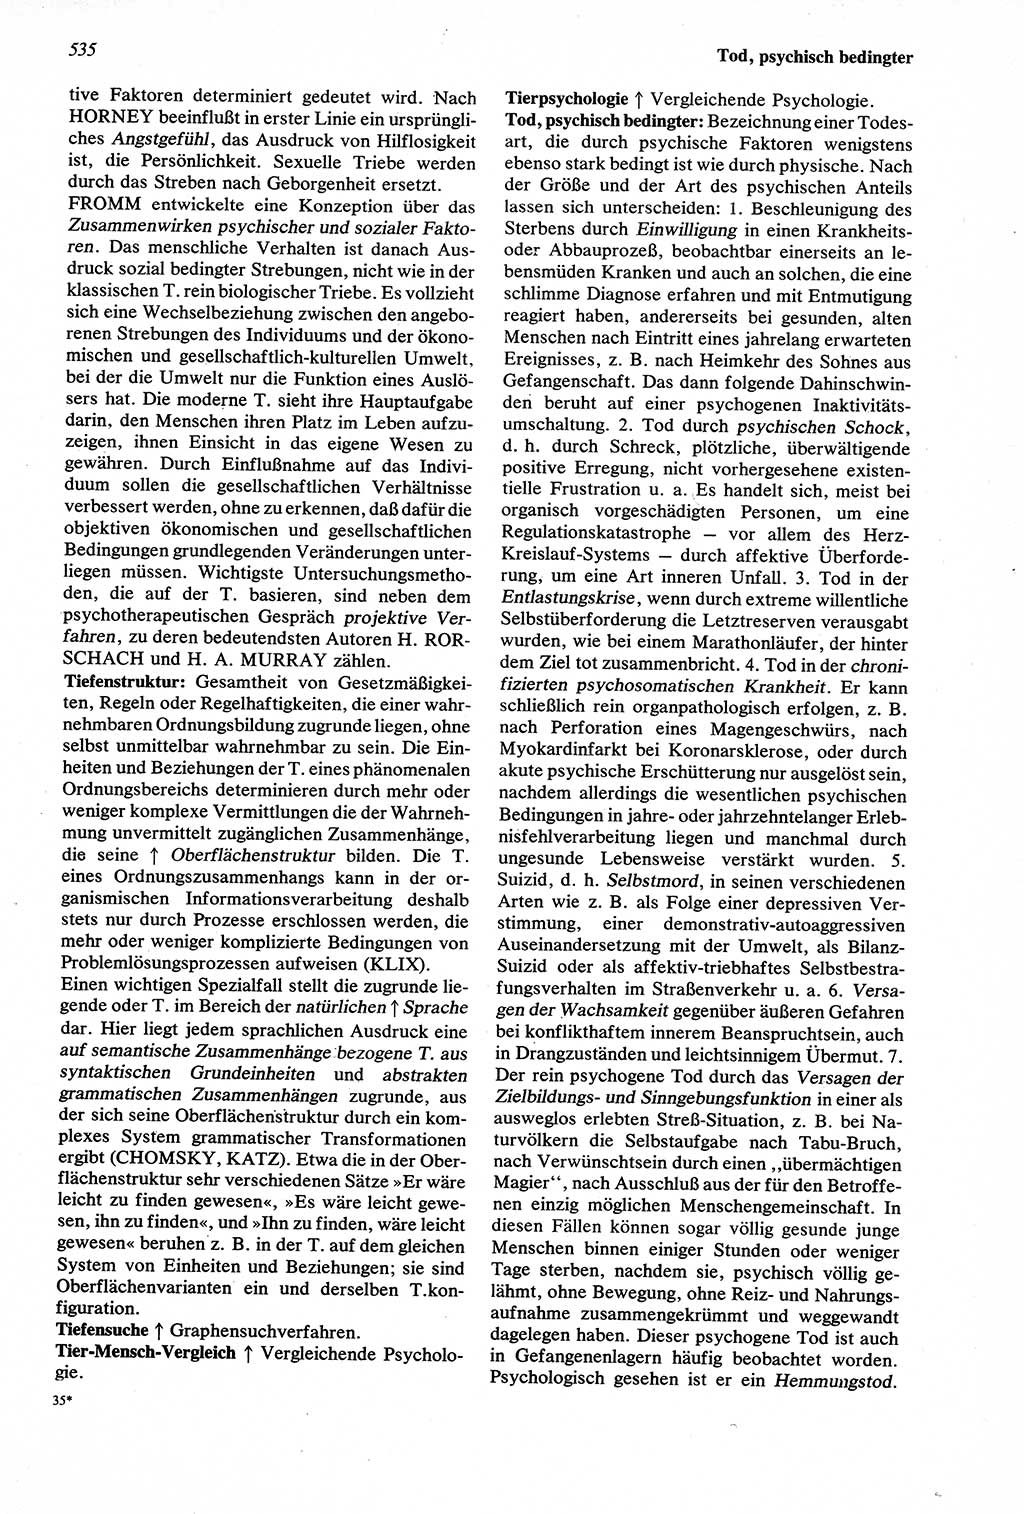 Wörterbuch der Psychologie [Deutsche Demokratische Republik (DDR)] 1976, Seite 535 (Wb. Psych. DDR 1976, S. 535)